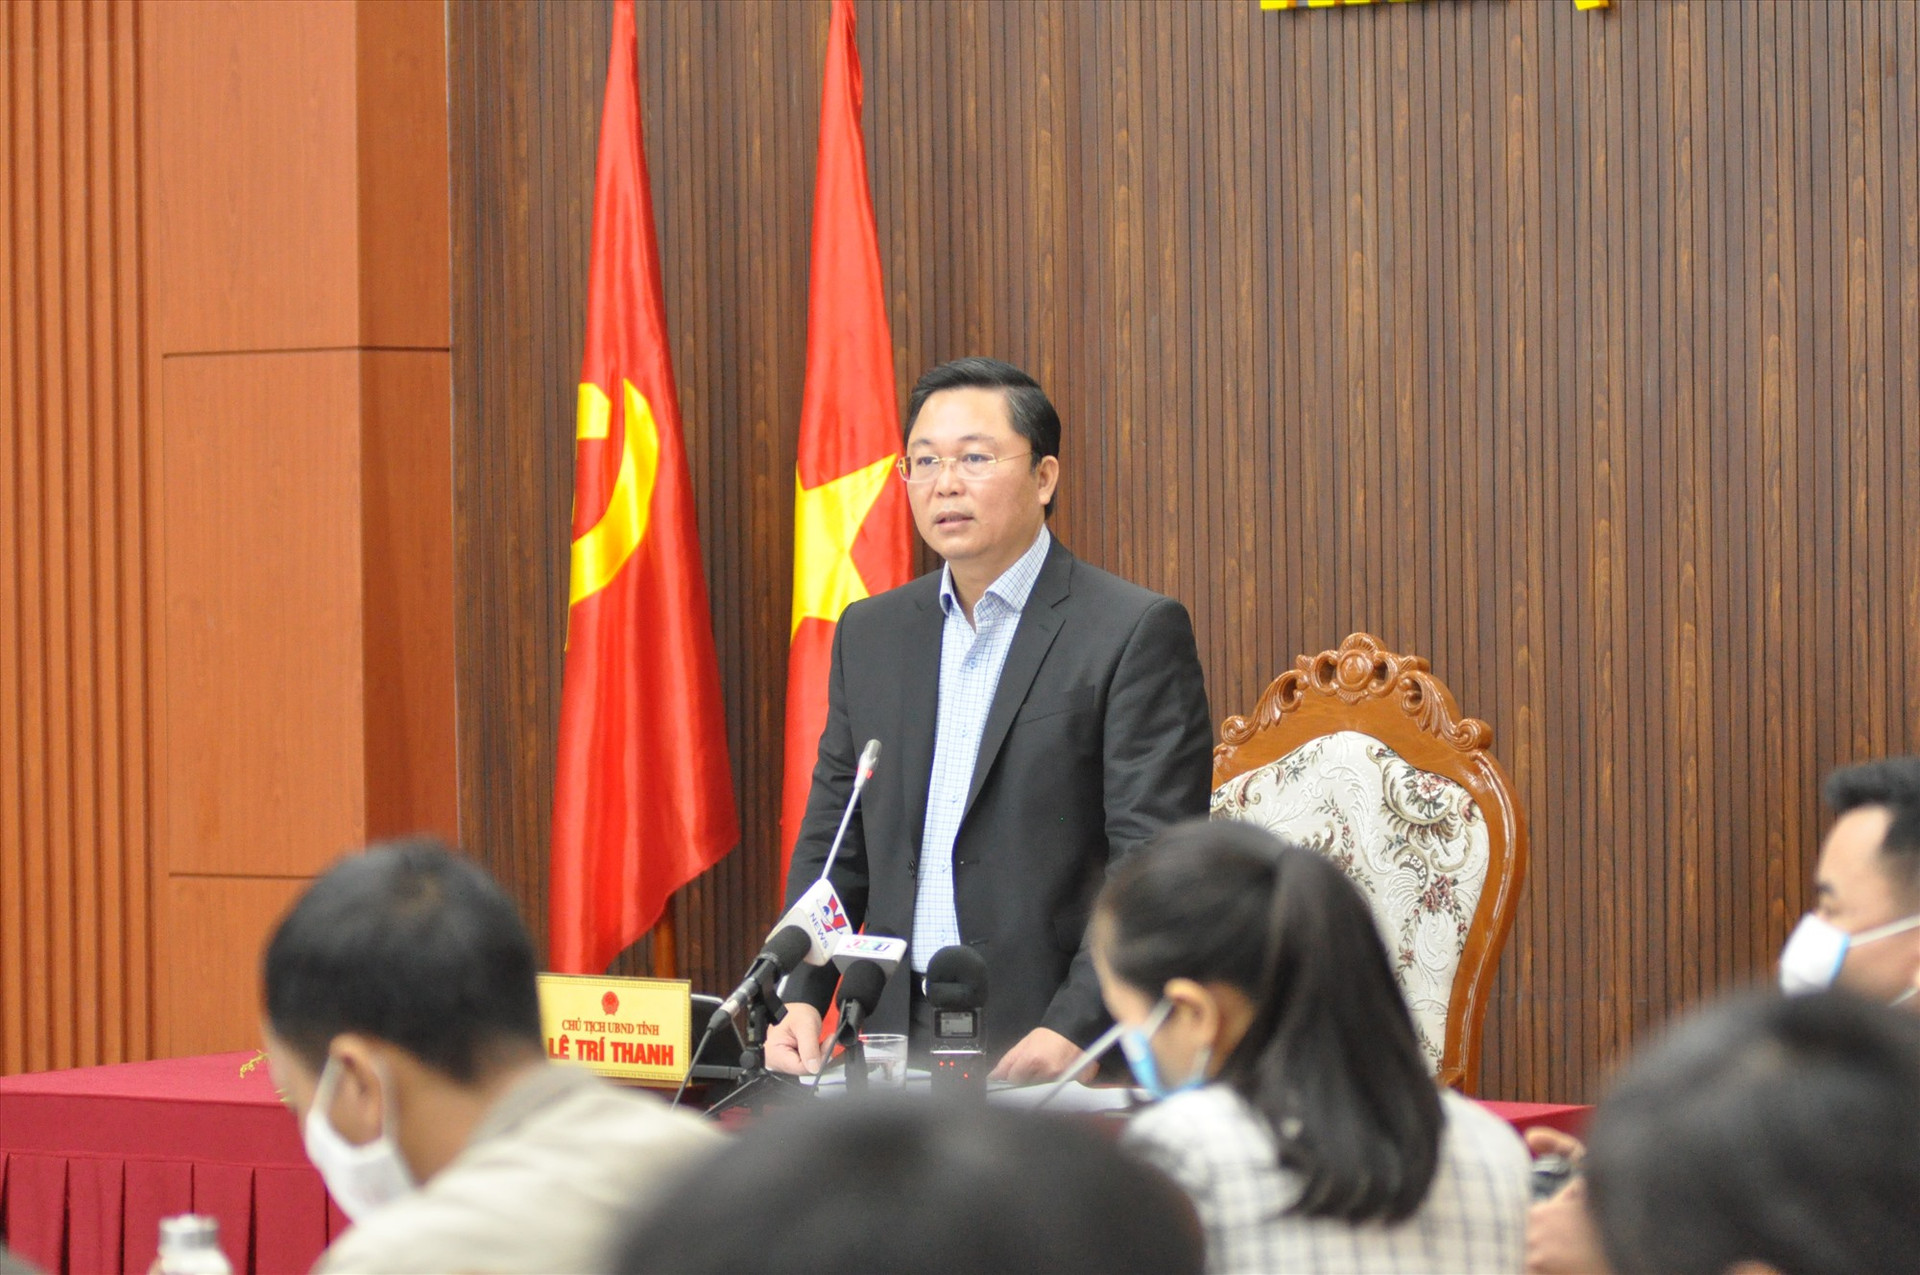 Chủ tịch UBND tỉnh Lê Trí Thanh chủ trì buổi họp báo. Ảnh: X.P